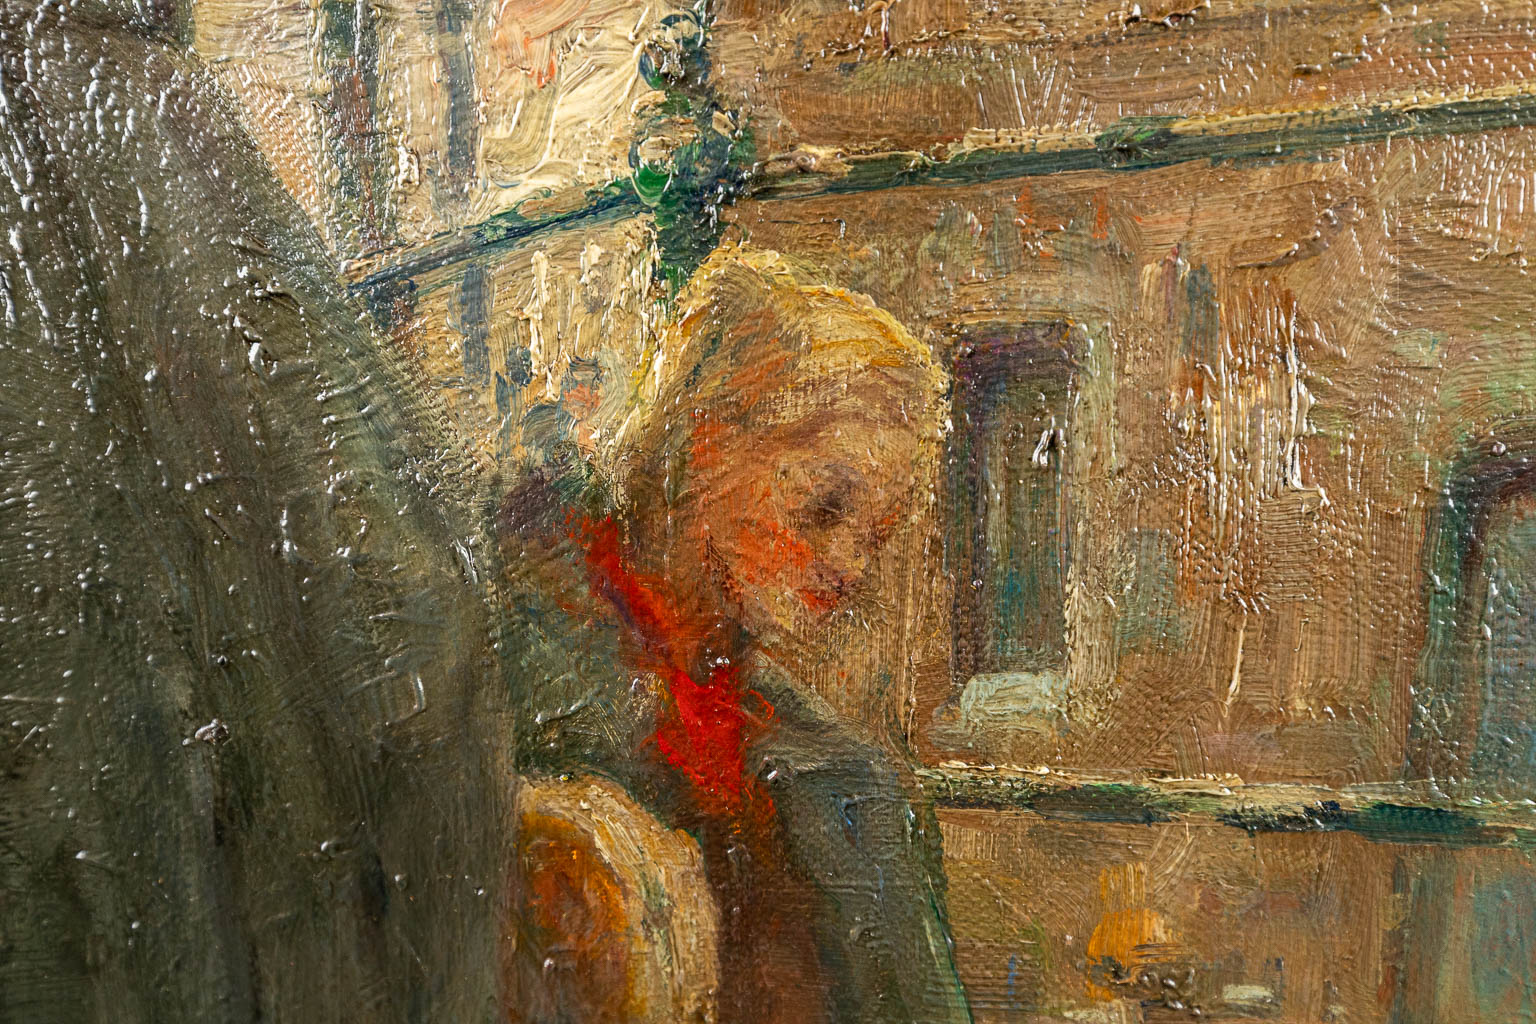 Ferdinand WILLAERT (1861-1938) 'Le long des quais à Gand' a painting, oil on canvas. (102 x 74 cm)